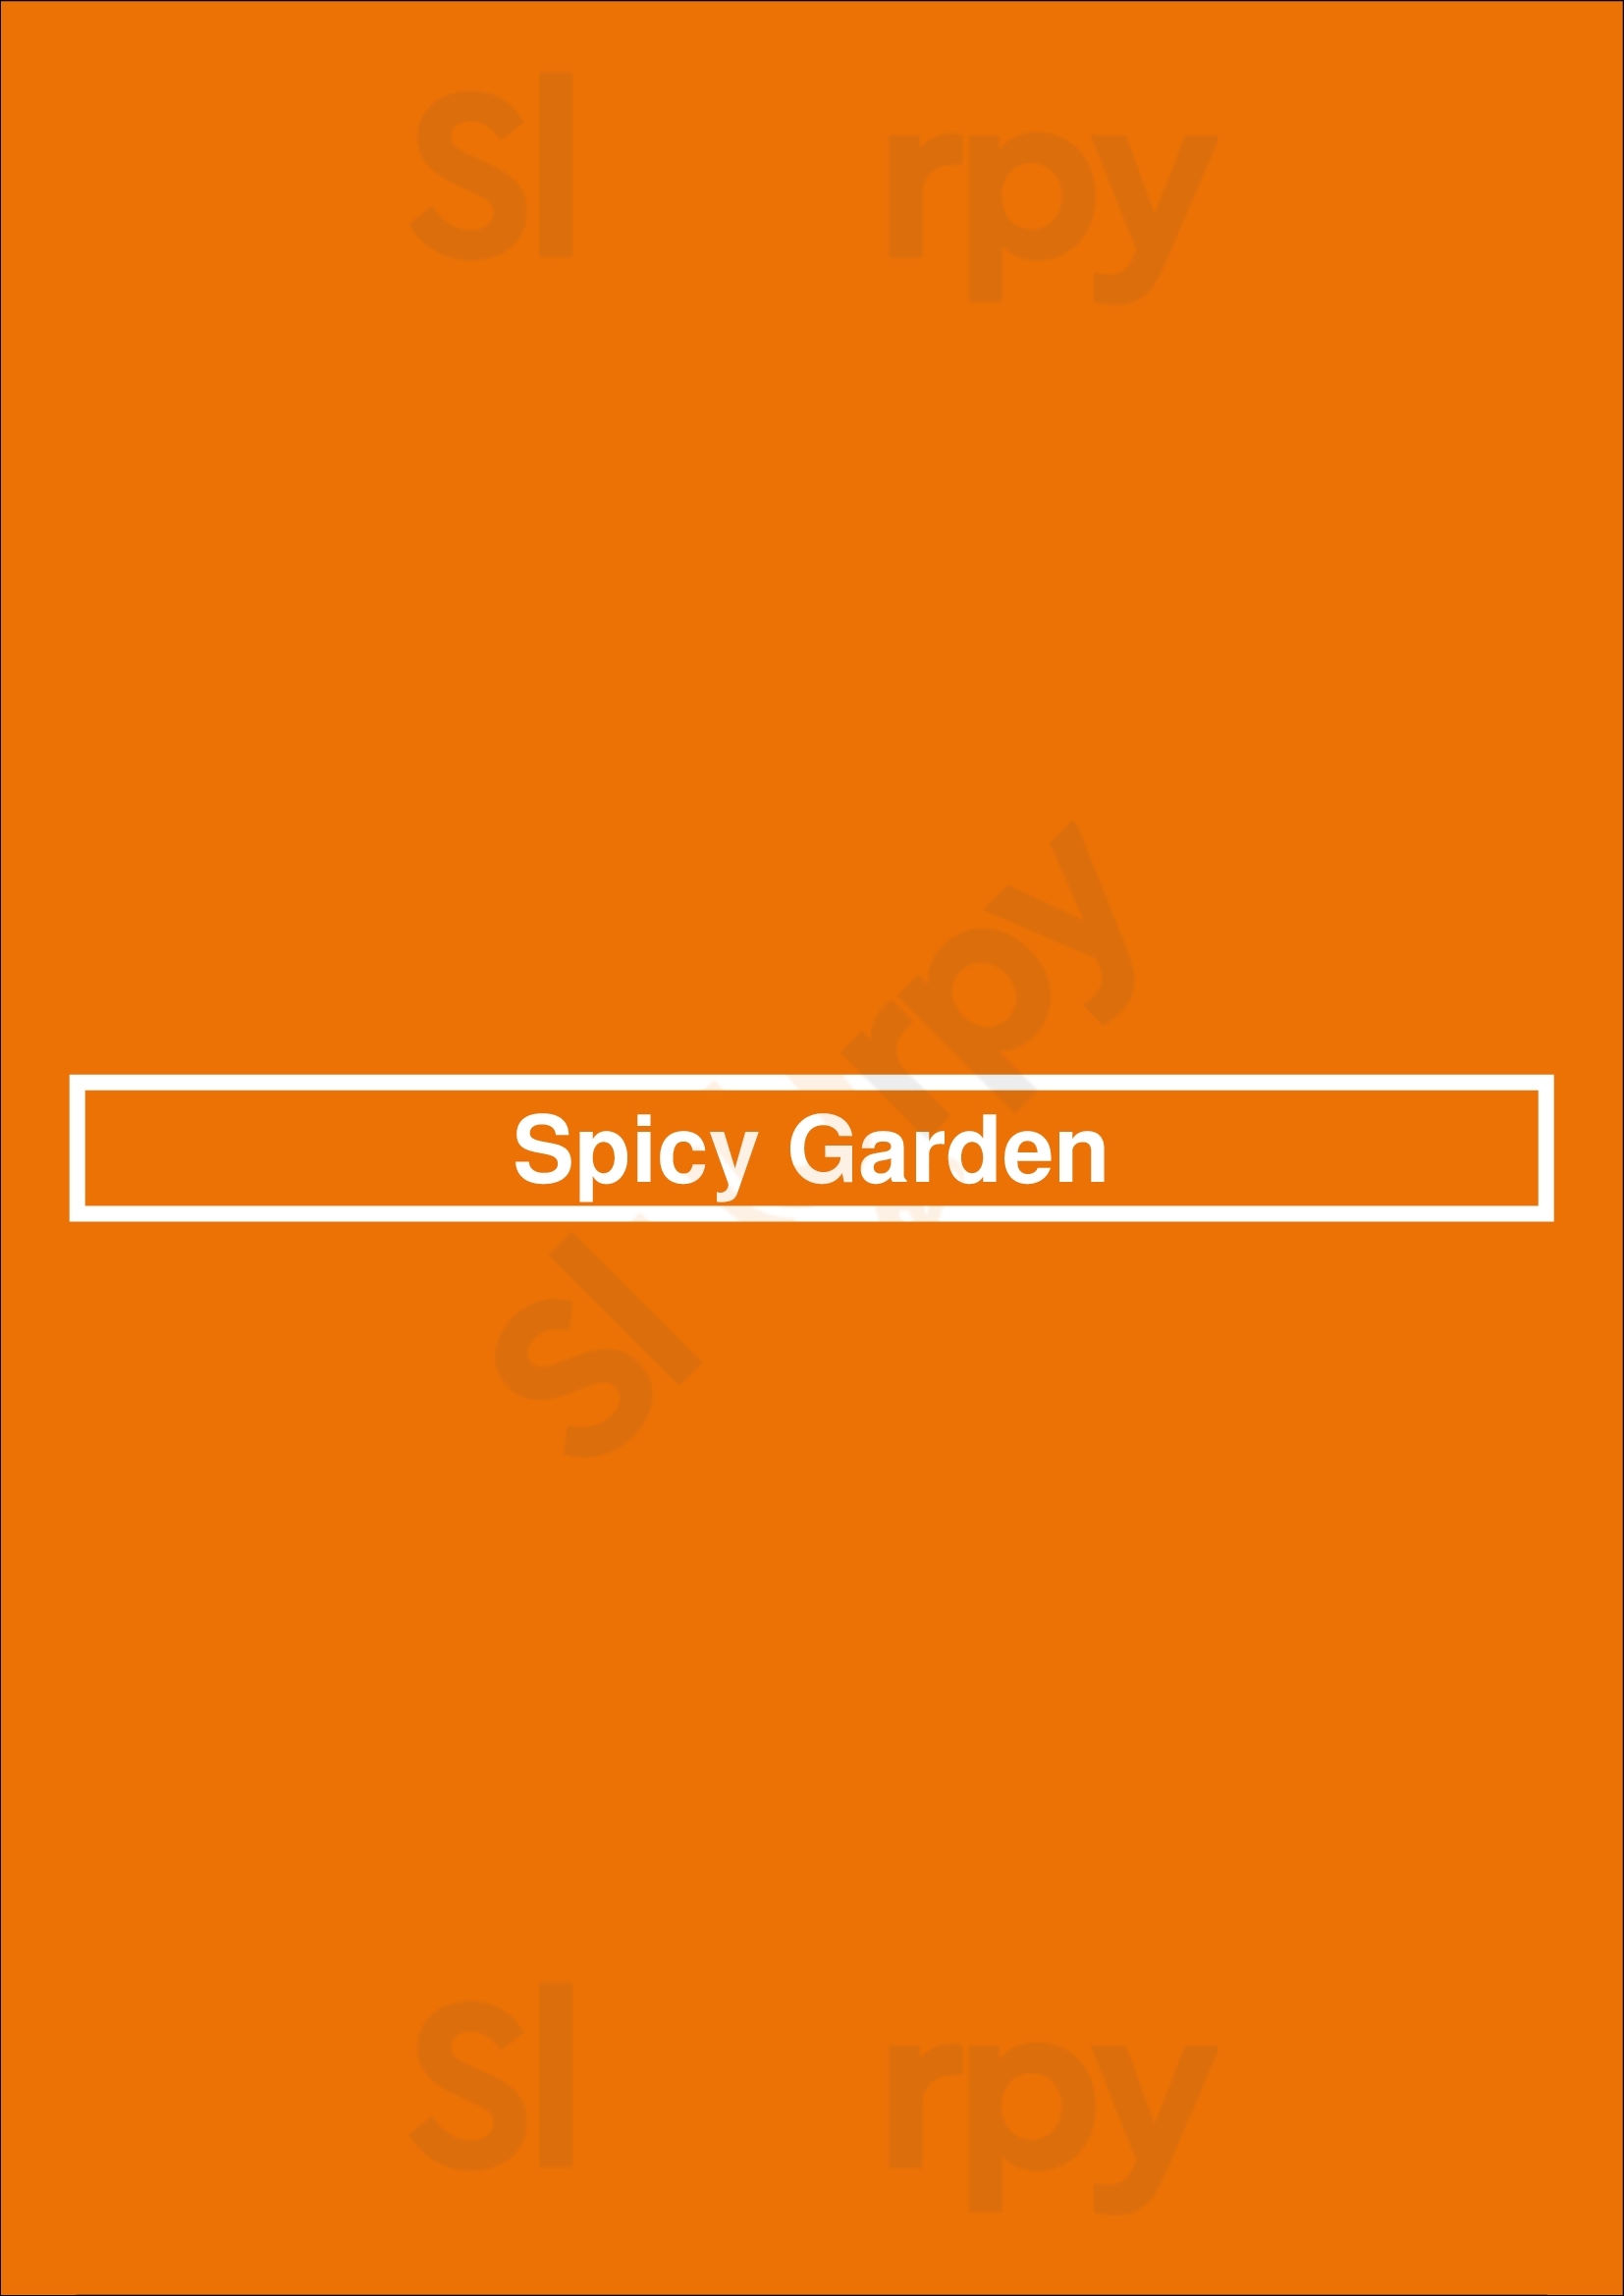 Spicy Garden Saskatoon Menu - 1